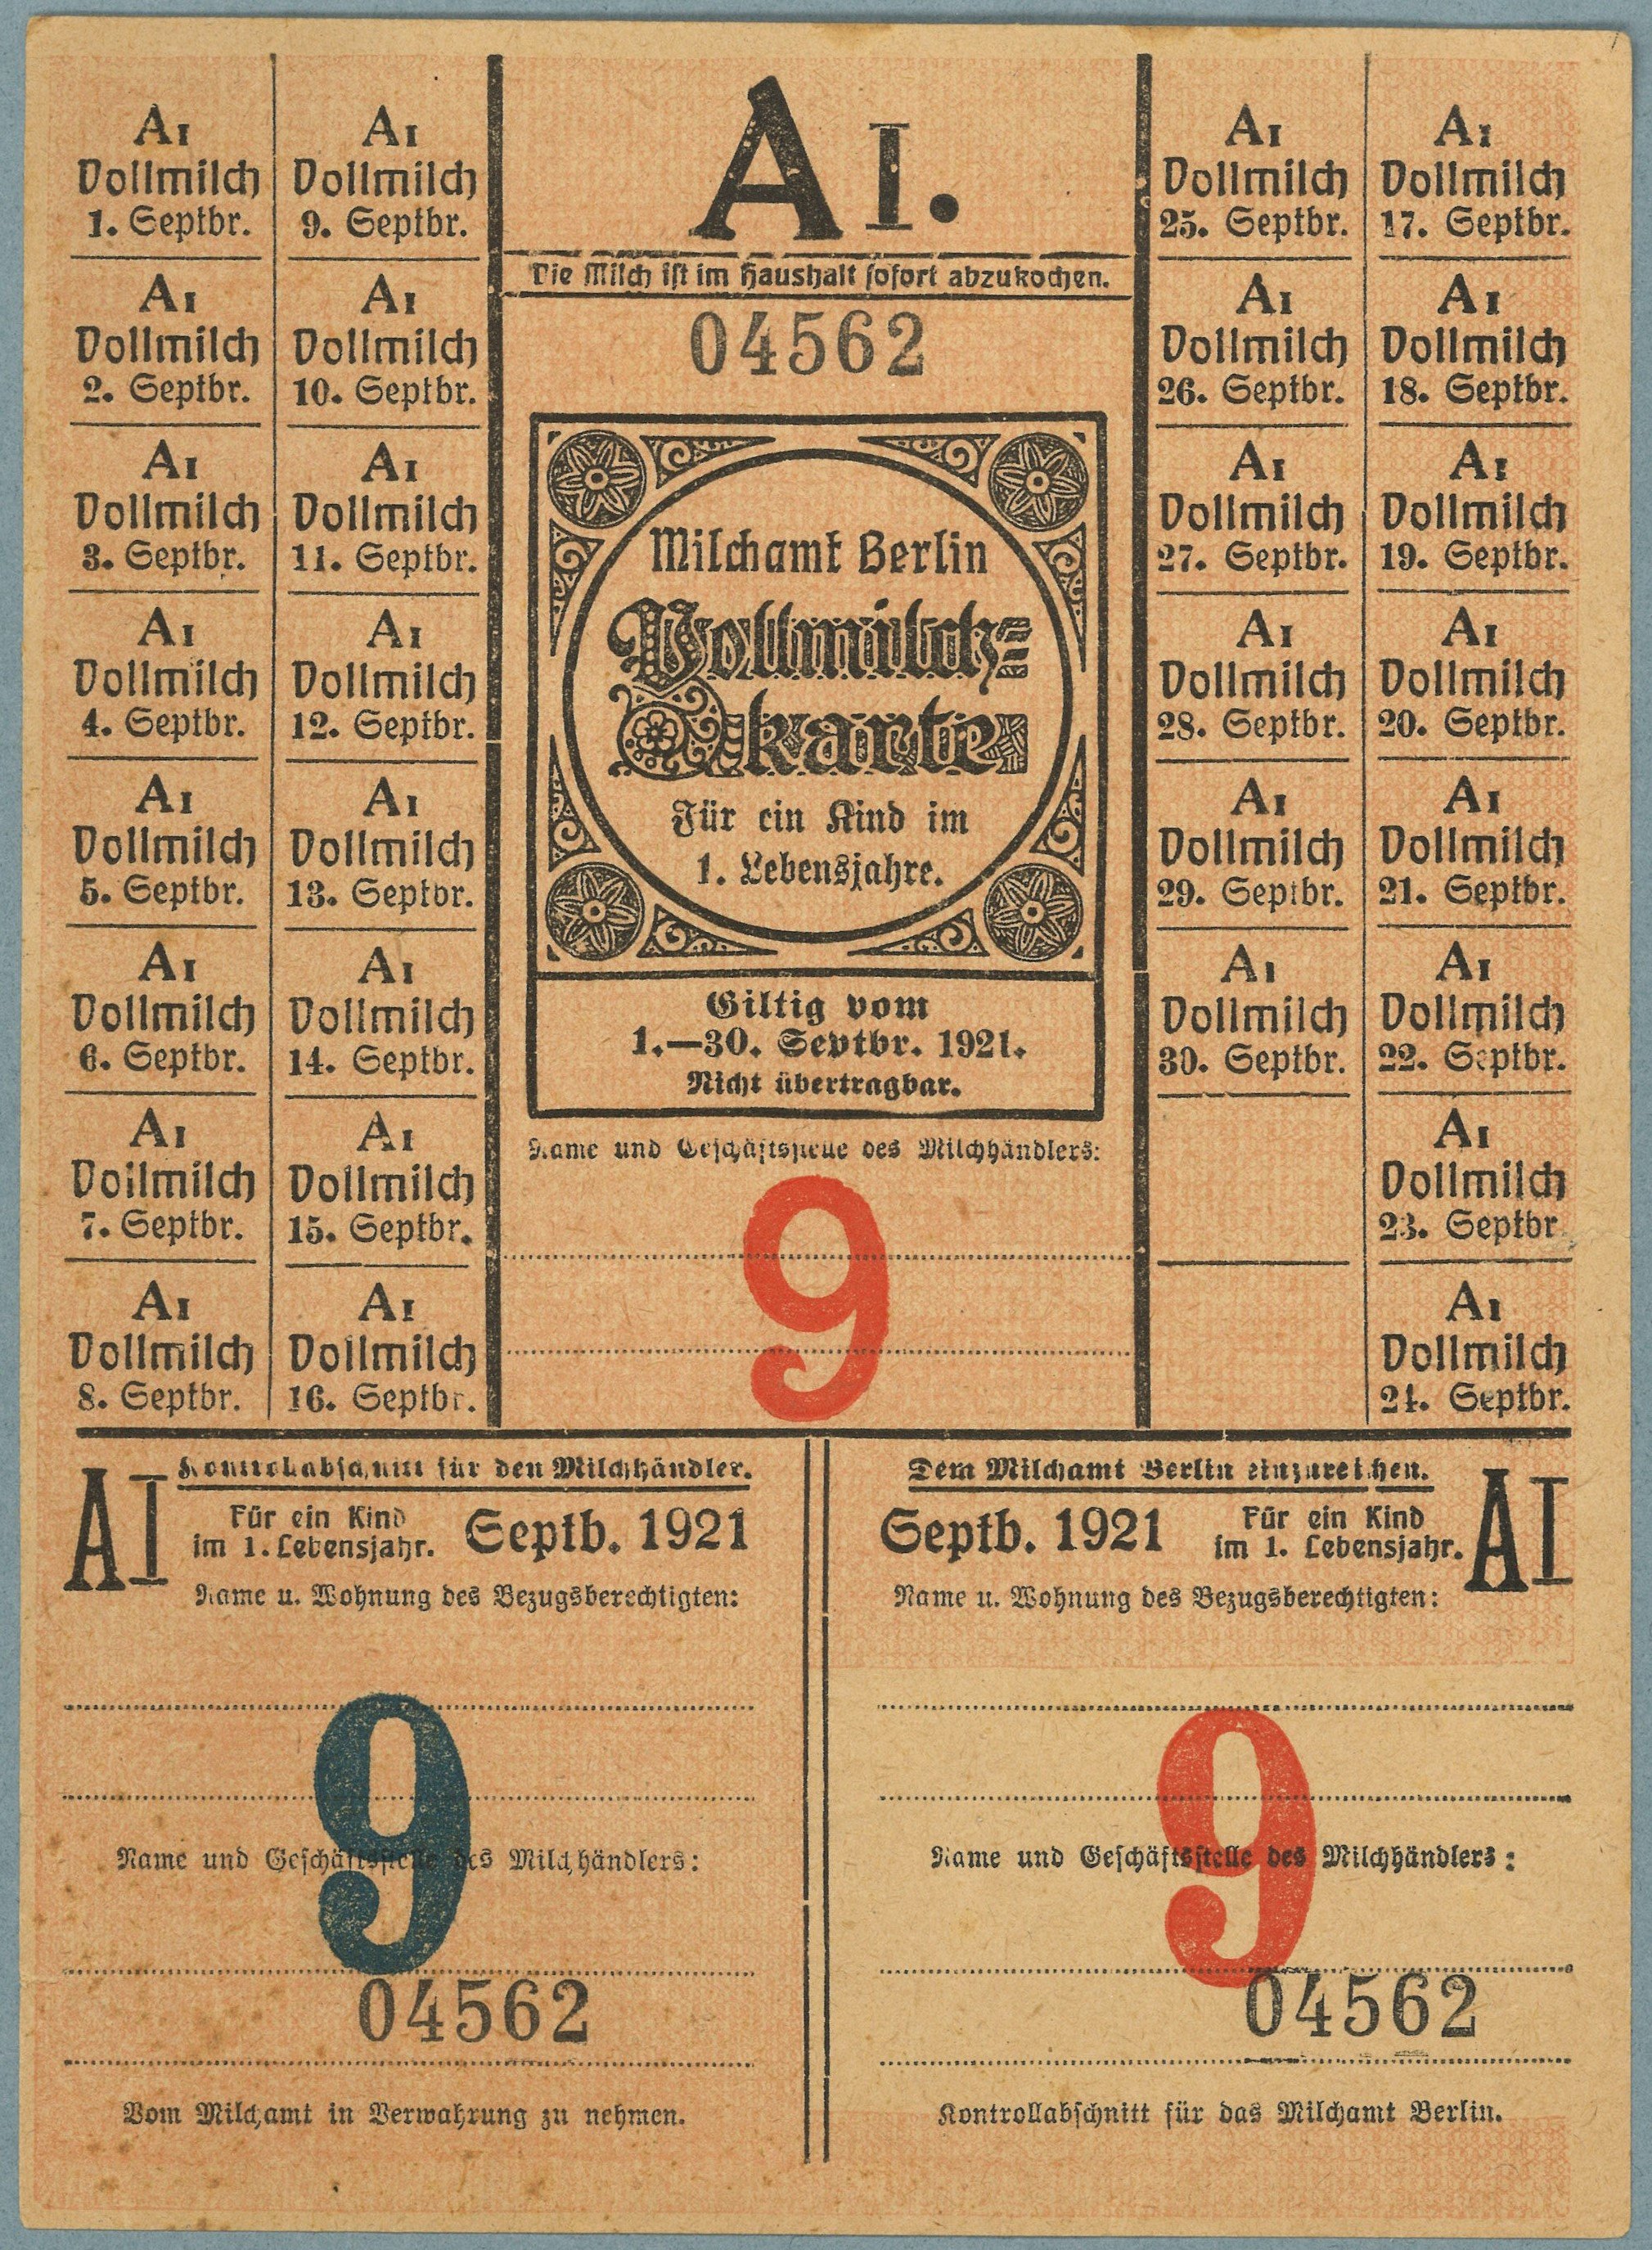 Berlin, Milchamt: Vollmilchkarte 1921 (Landesgeschichtliche Vereinigung für die Mark Brandenburg e.V., Archiv CC BY)